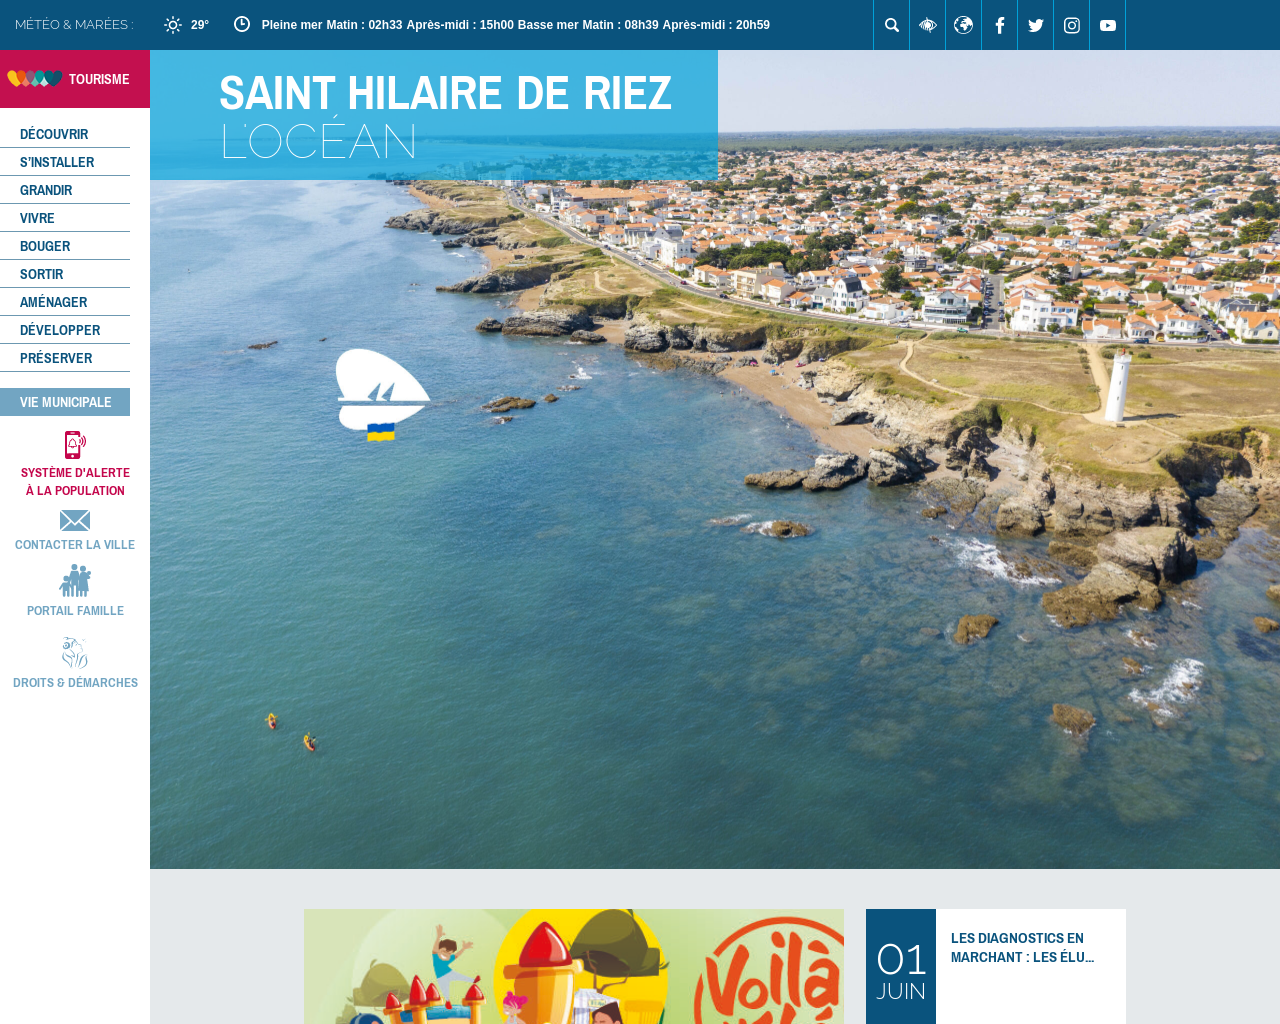 www.sainthilairederiez.fr